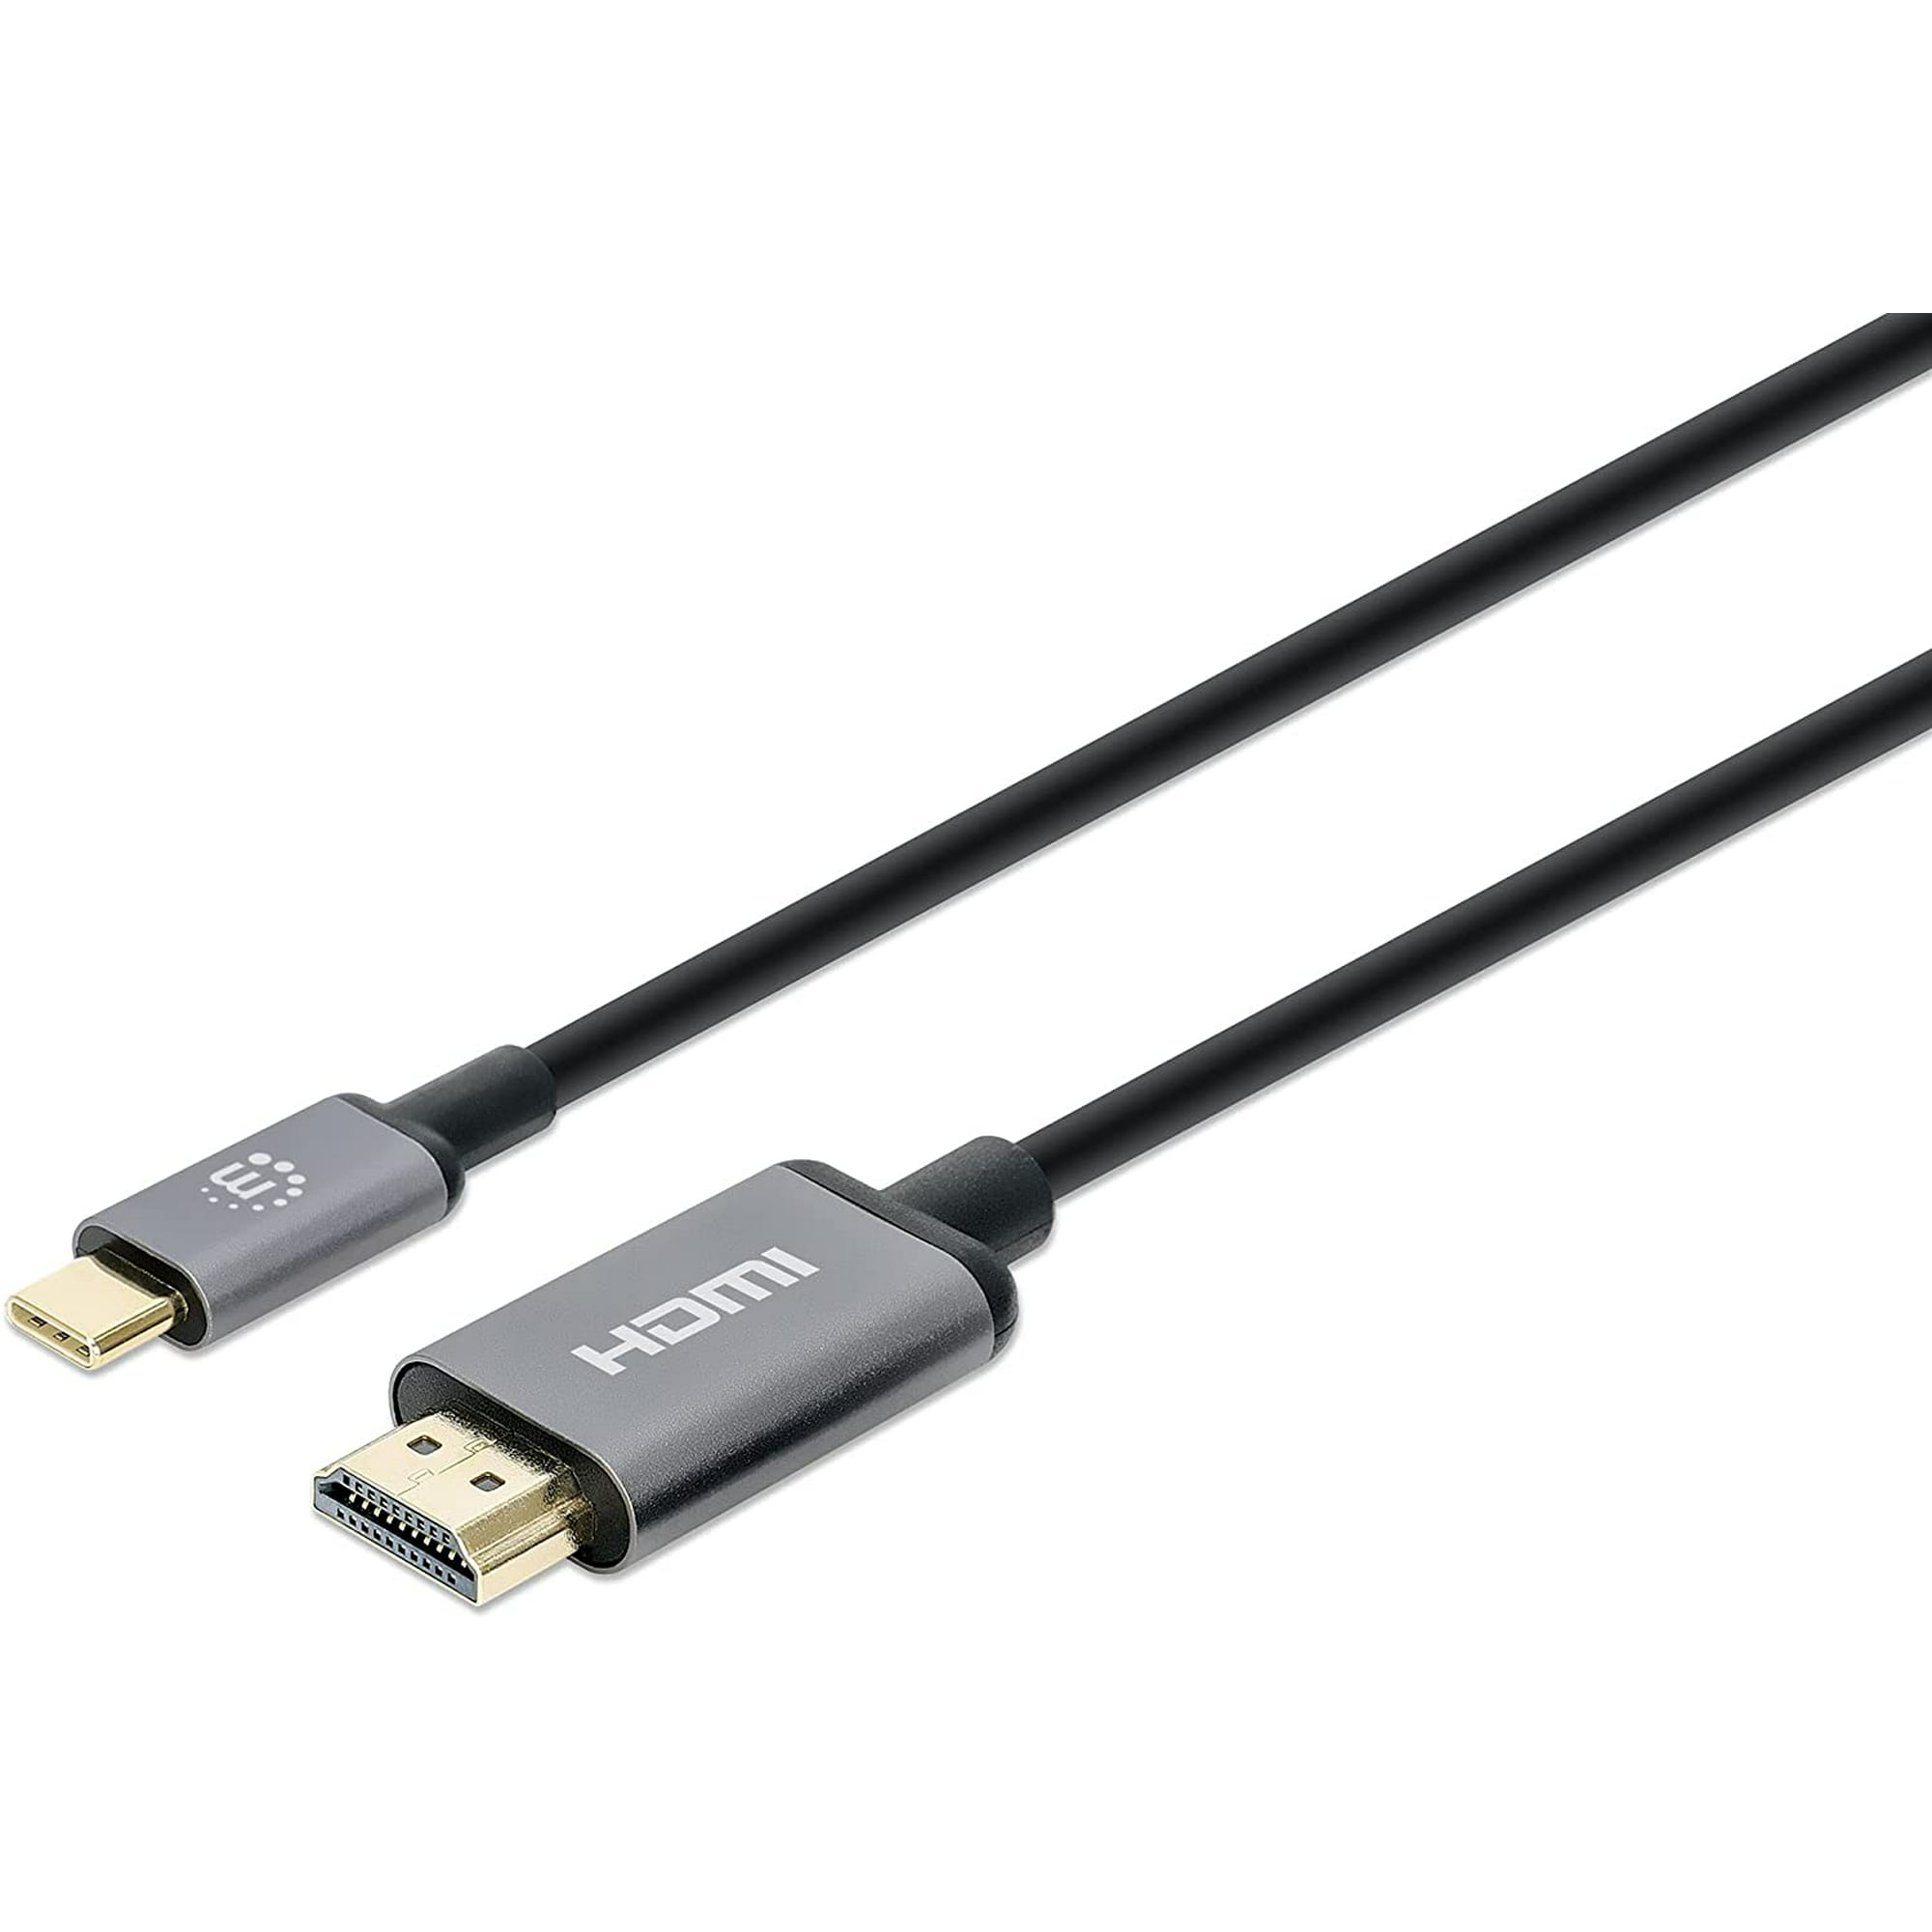  WJESOG Cable adaptador HDMI a USB C de 6.6 pies 4K a 60 Hz con  adaptador de corriente USB, HDMI macho a tipo C macho convertidor  compatible con MacBook Pro, Mac